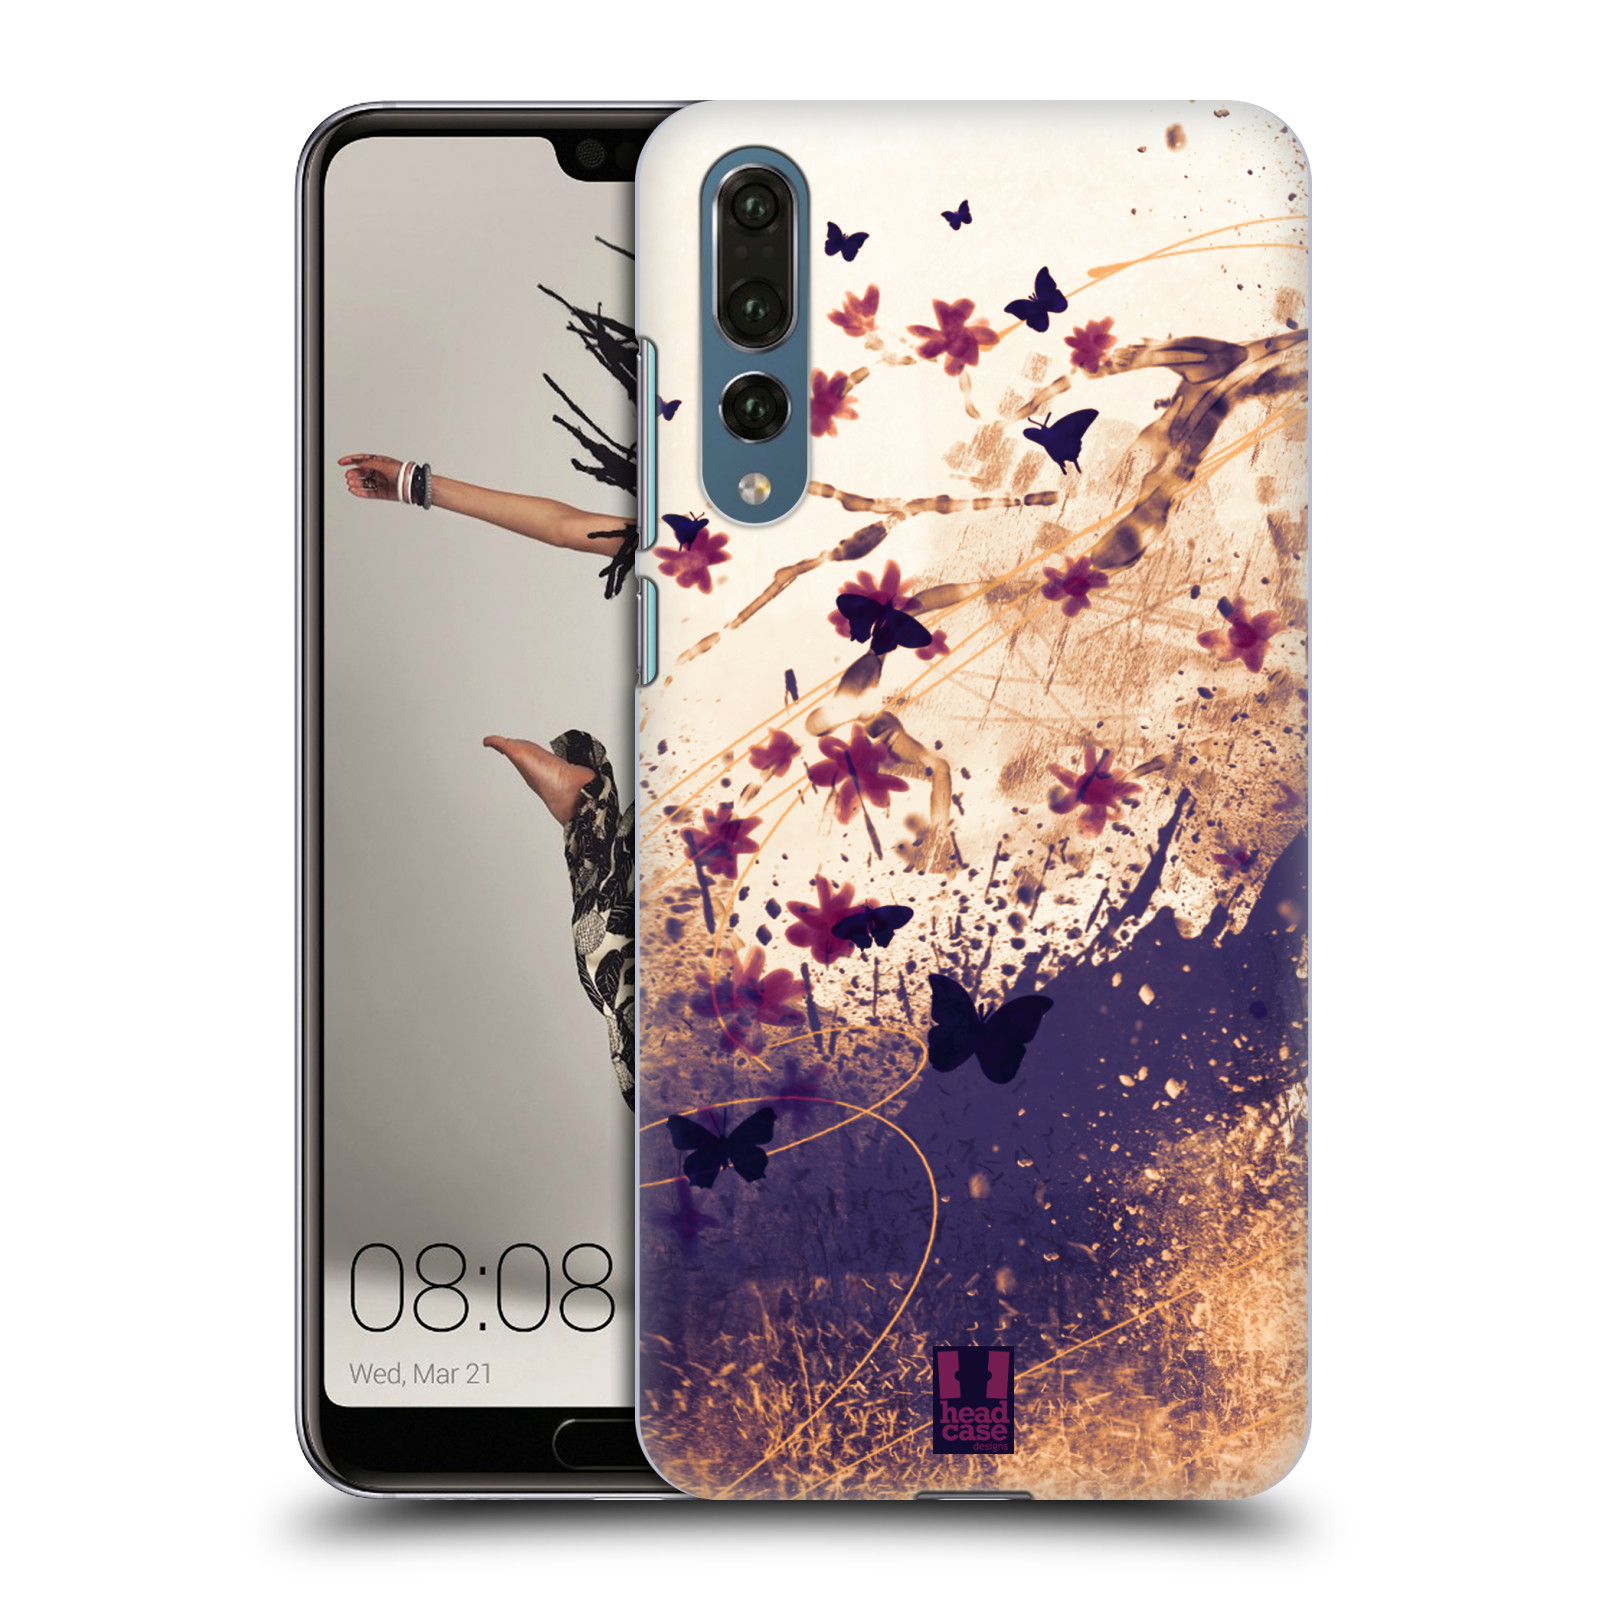 Zadní obal pro mobil Huawei P20 PRO - HEAD CASE - Barevné květy a motýlci